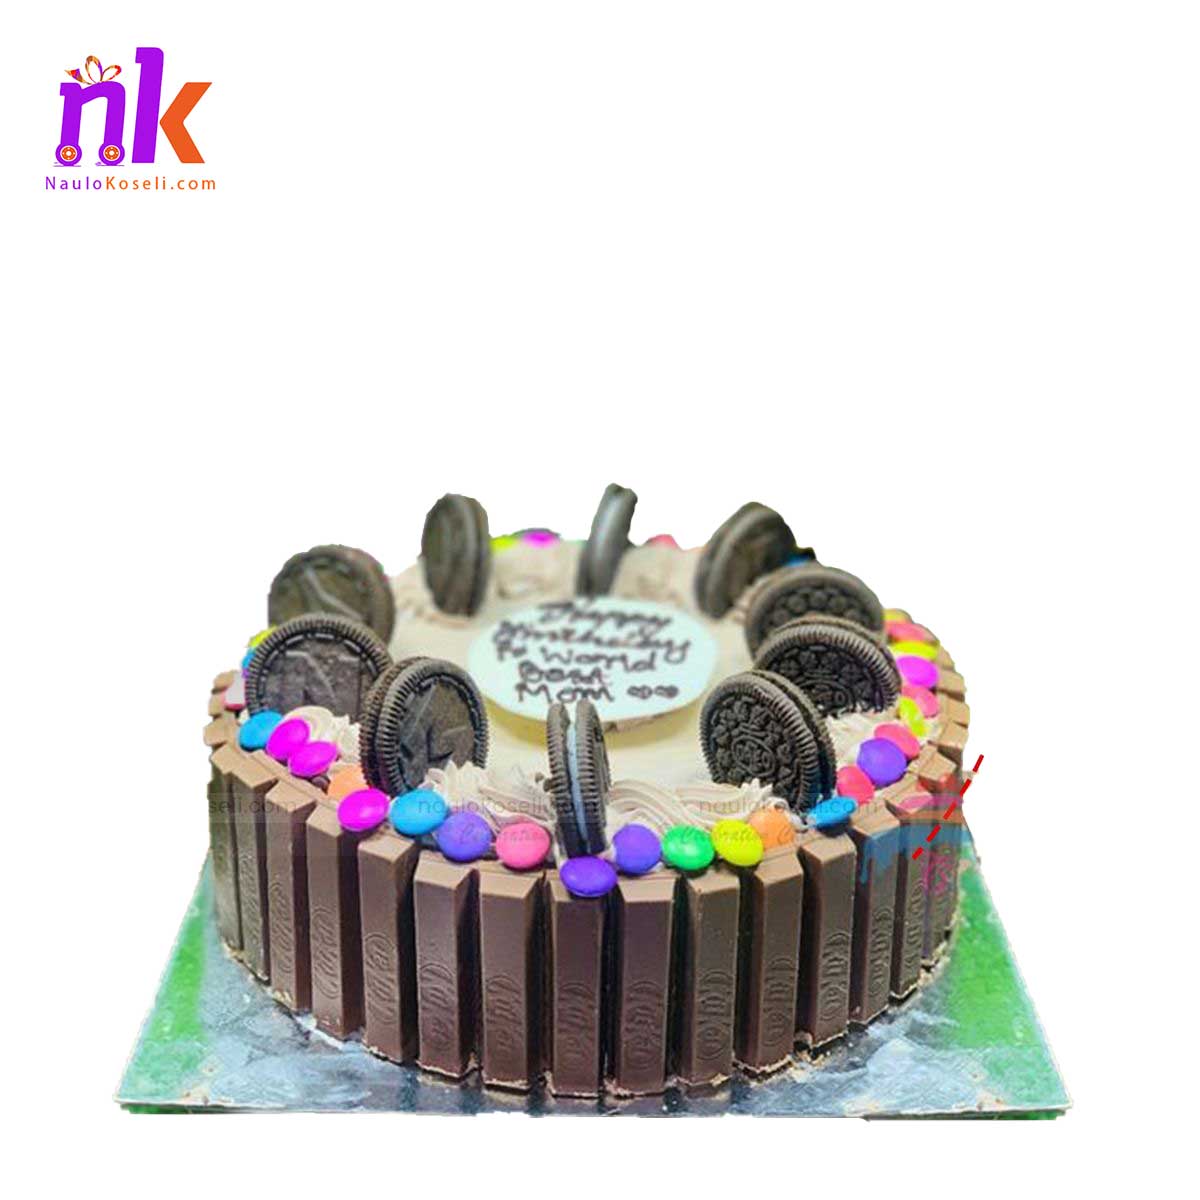 KitKat Chocolate Cake with Gems